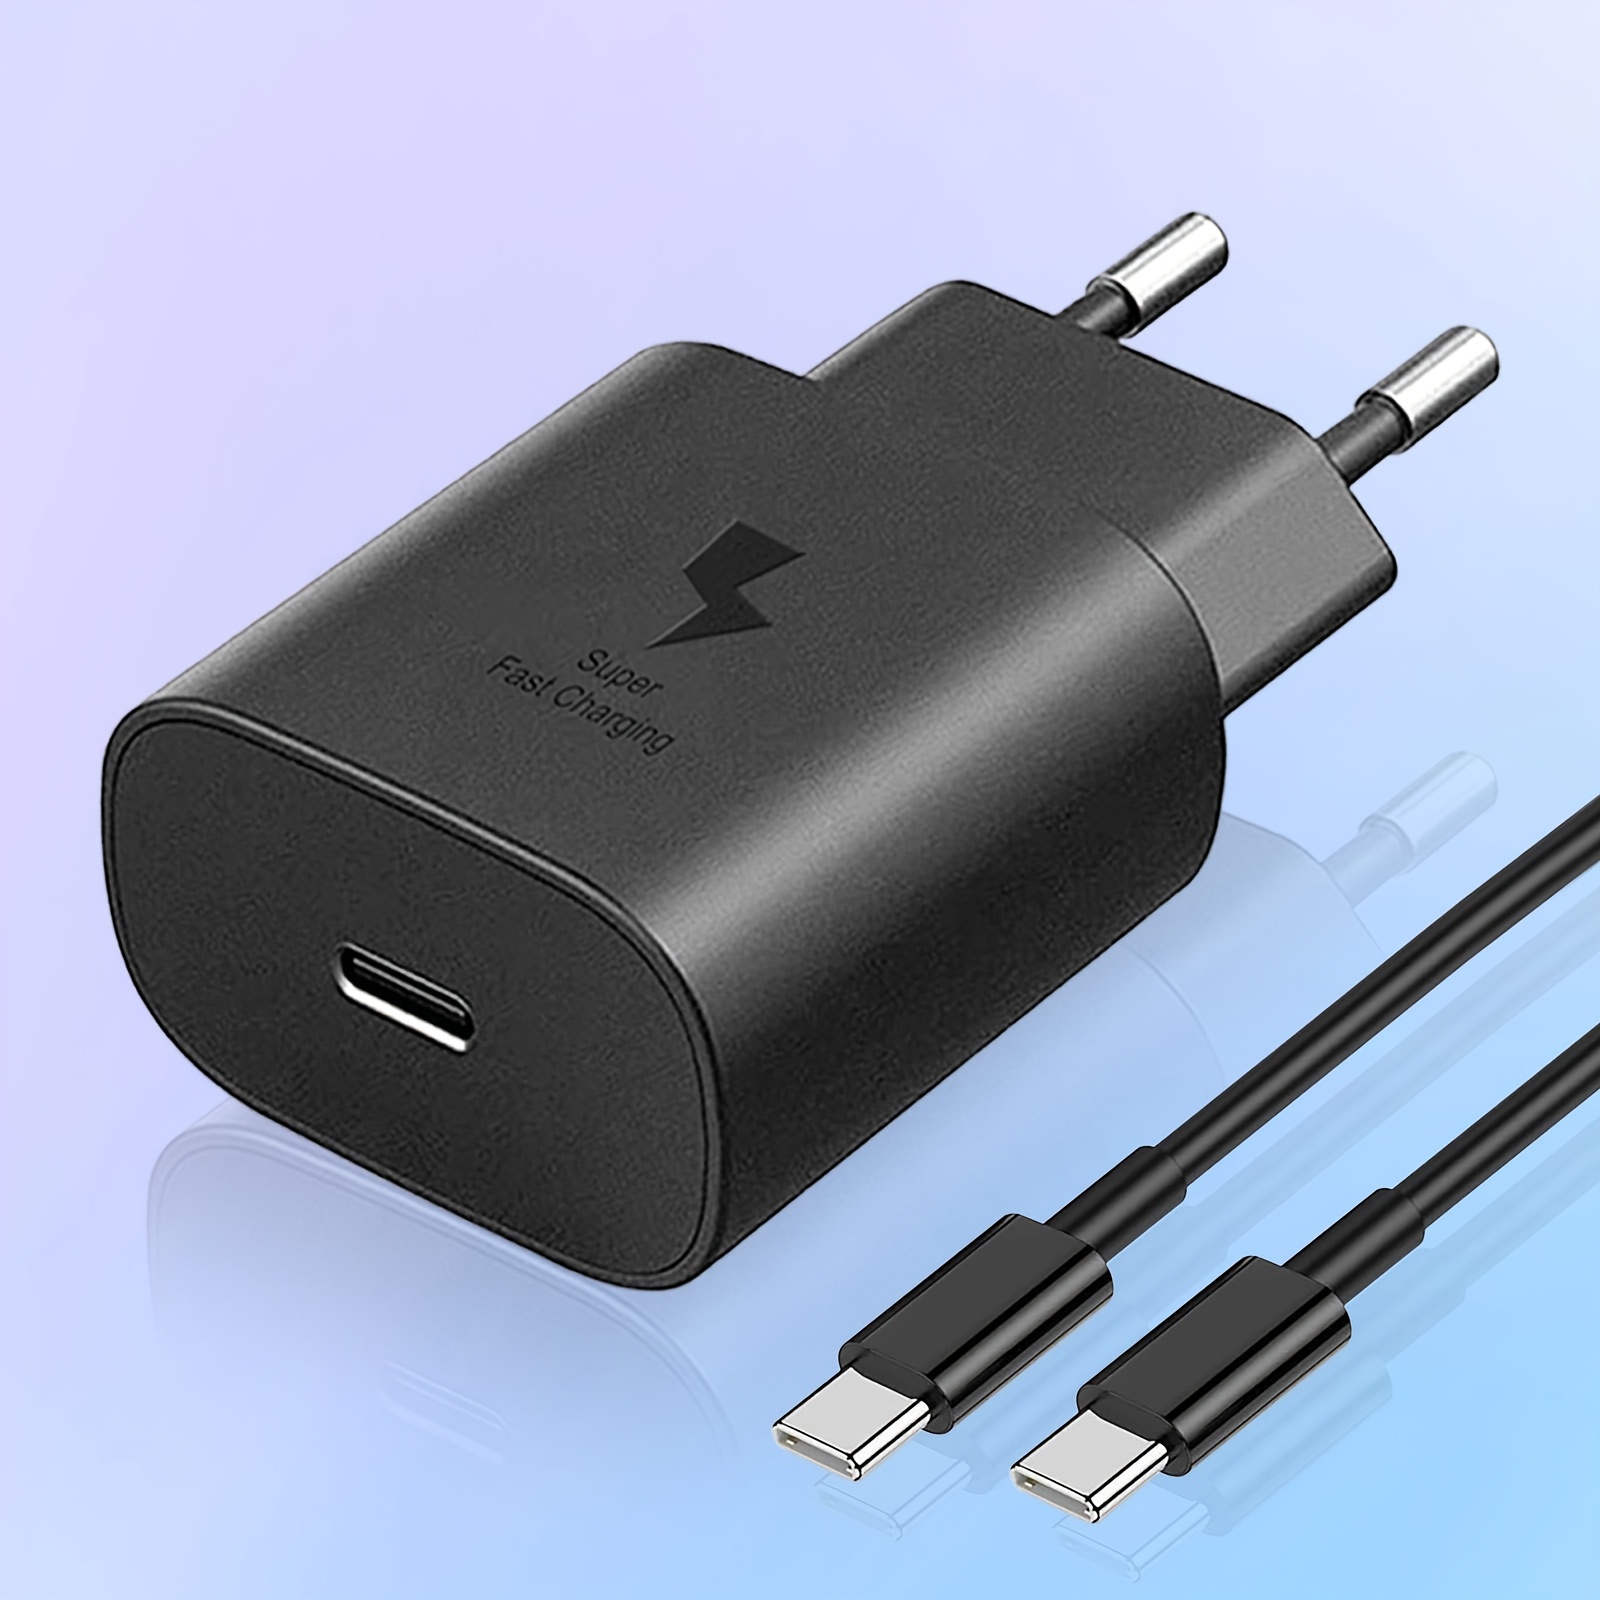 Chargeur Rapide USB C pour iPhone, 50W Chargeur USB C avec Câble Charge